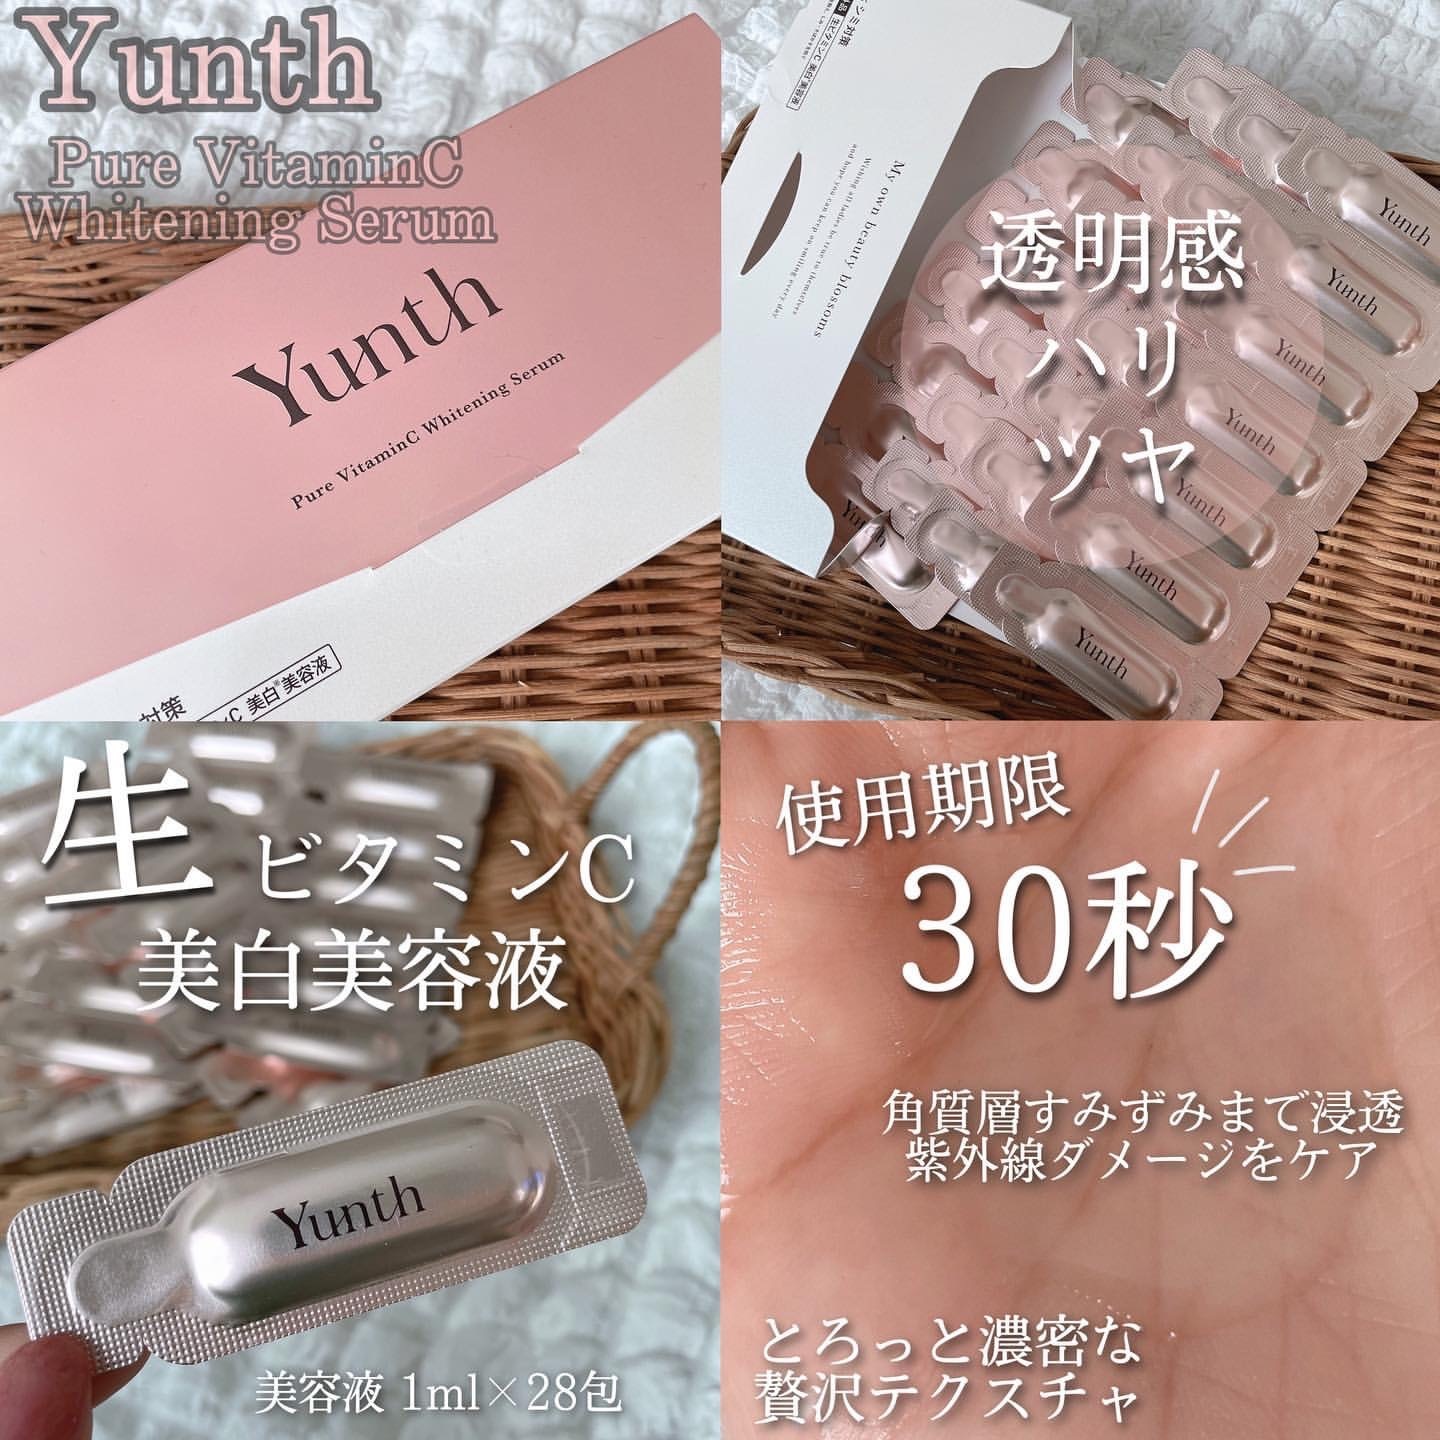 日本Yunth 100%高純度生維他命C美白導入美容液